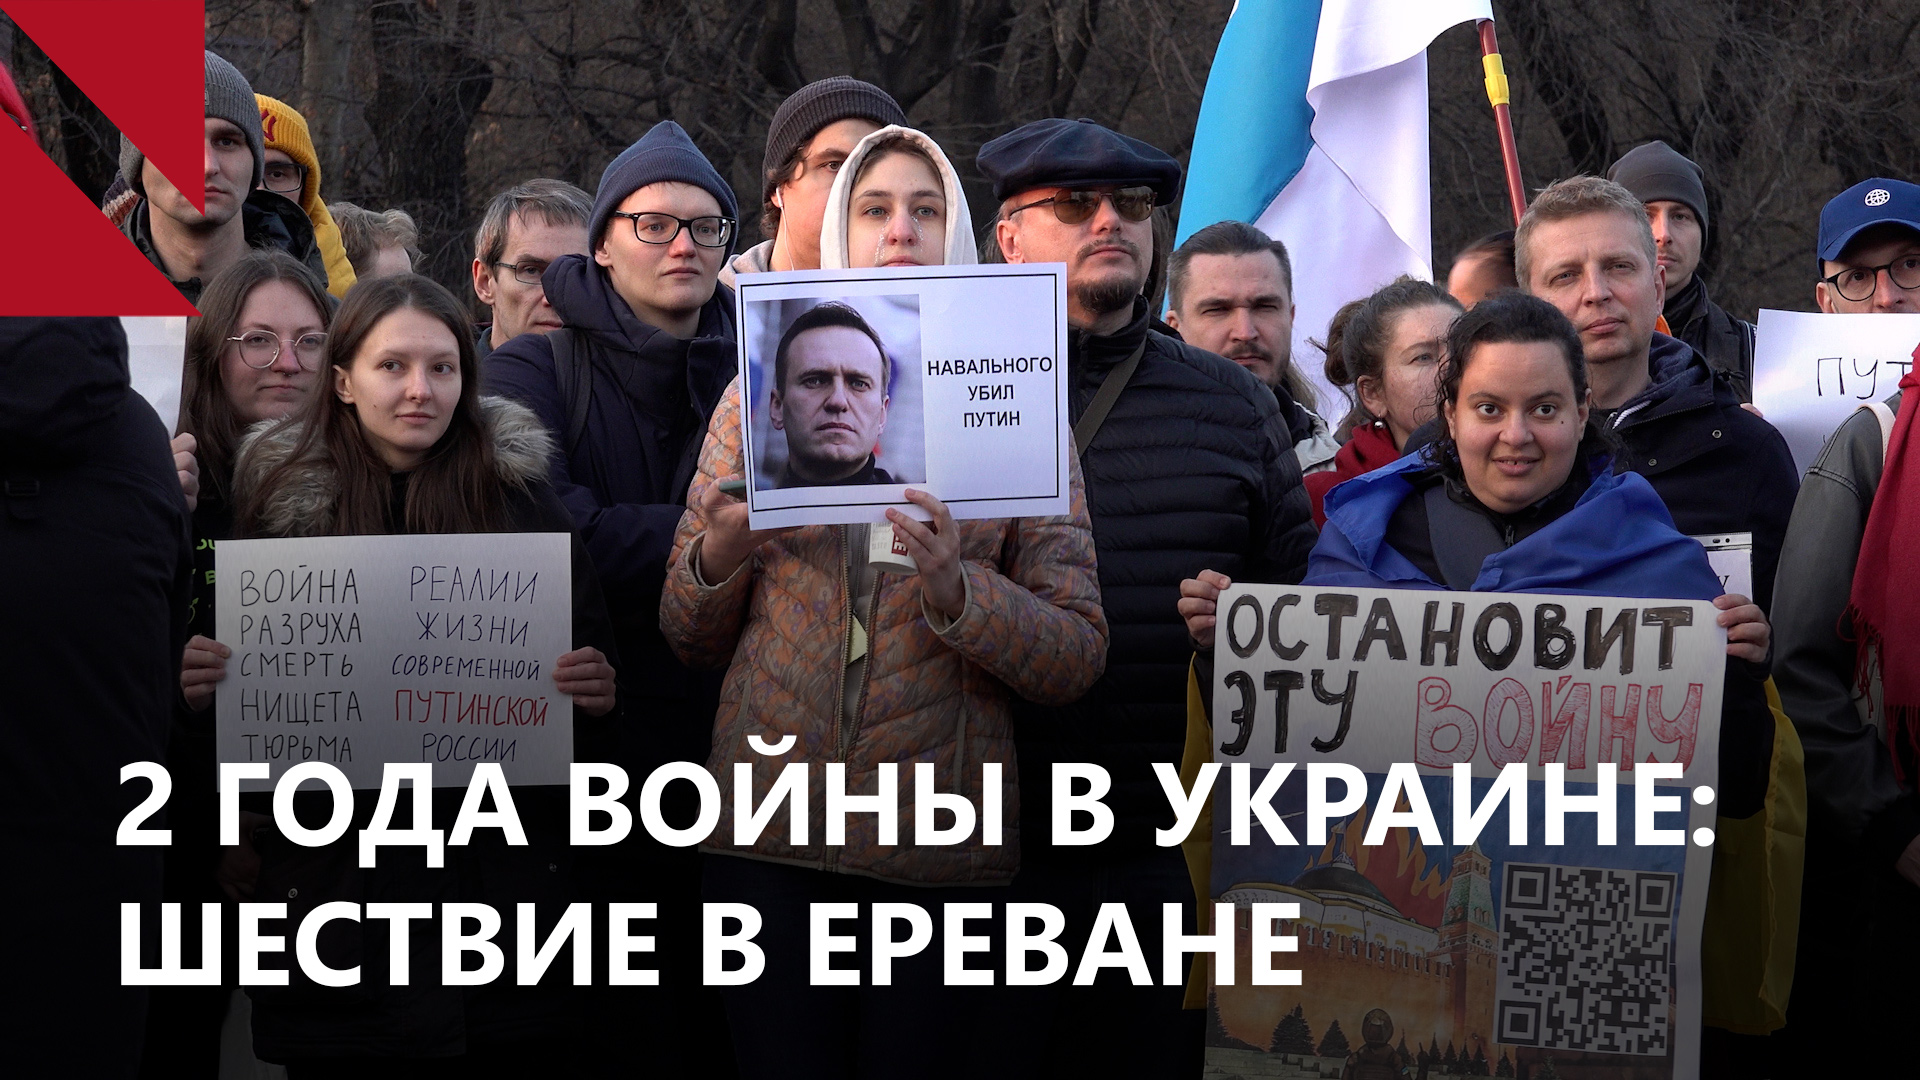 Украинцы и россияне против войны: шествие в Ереване